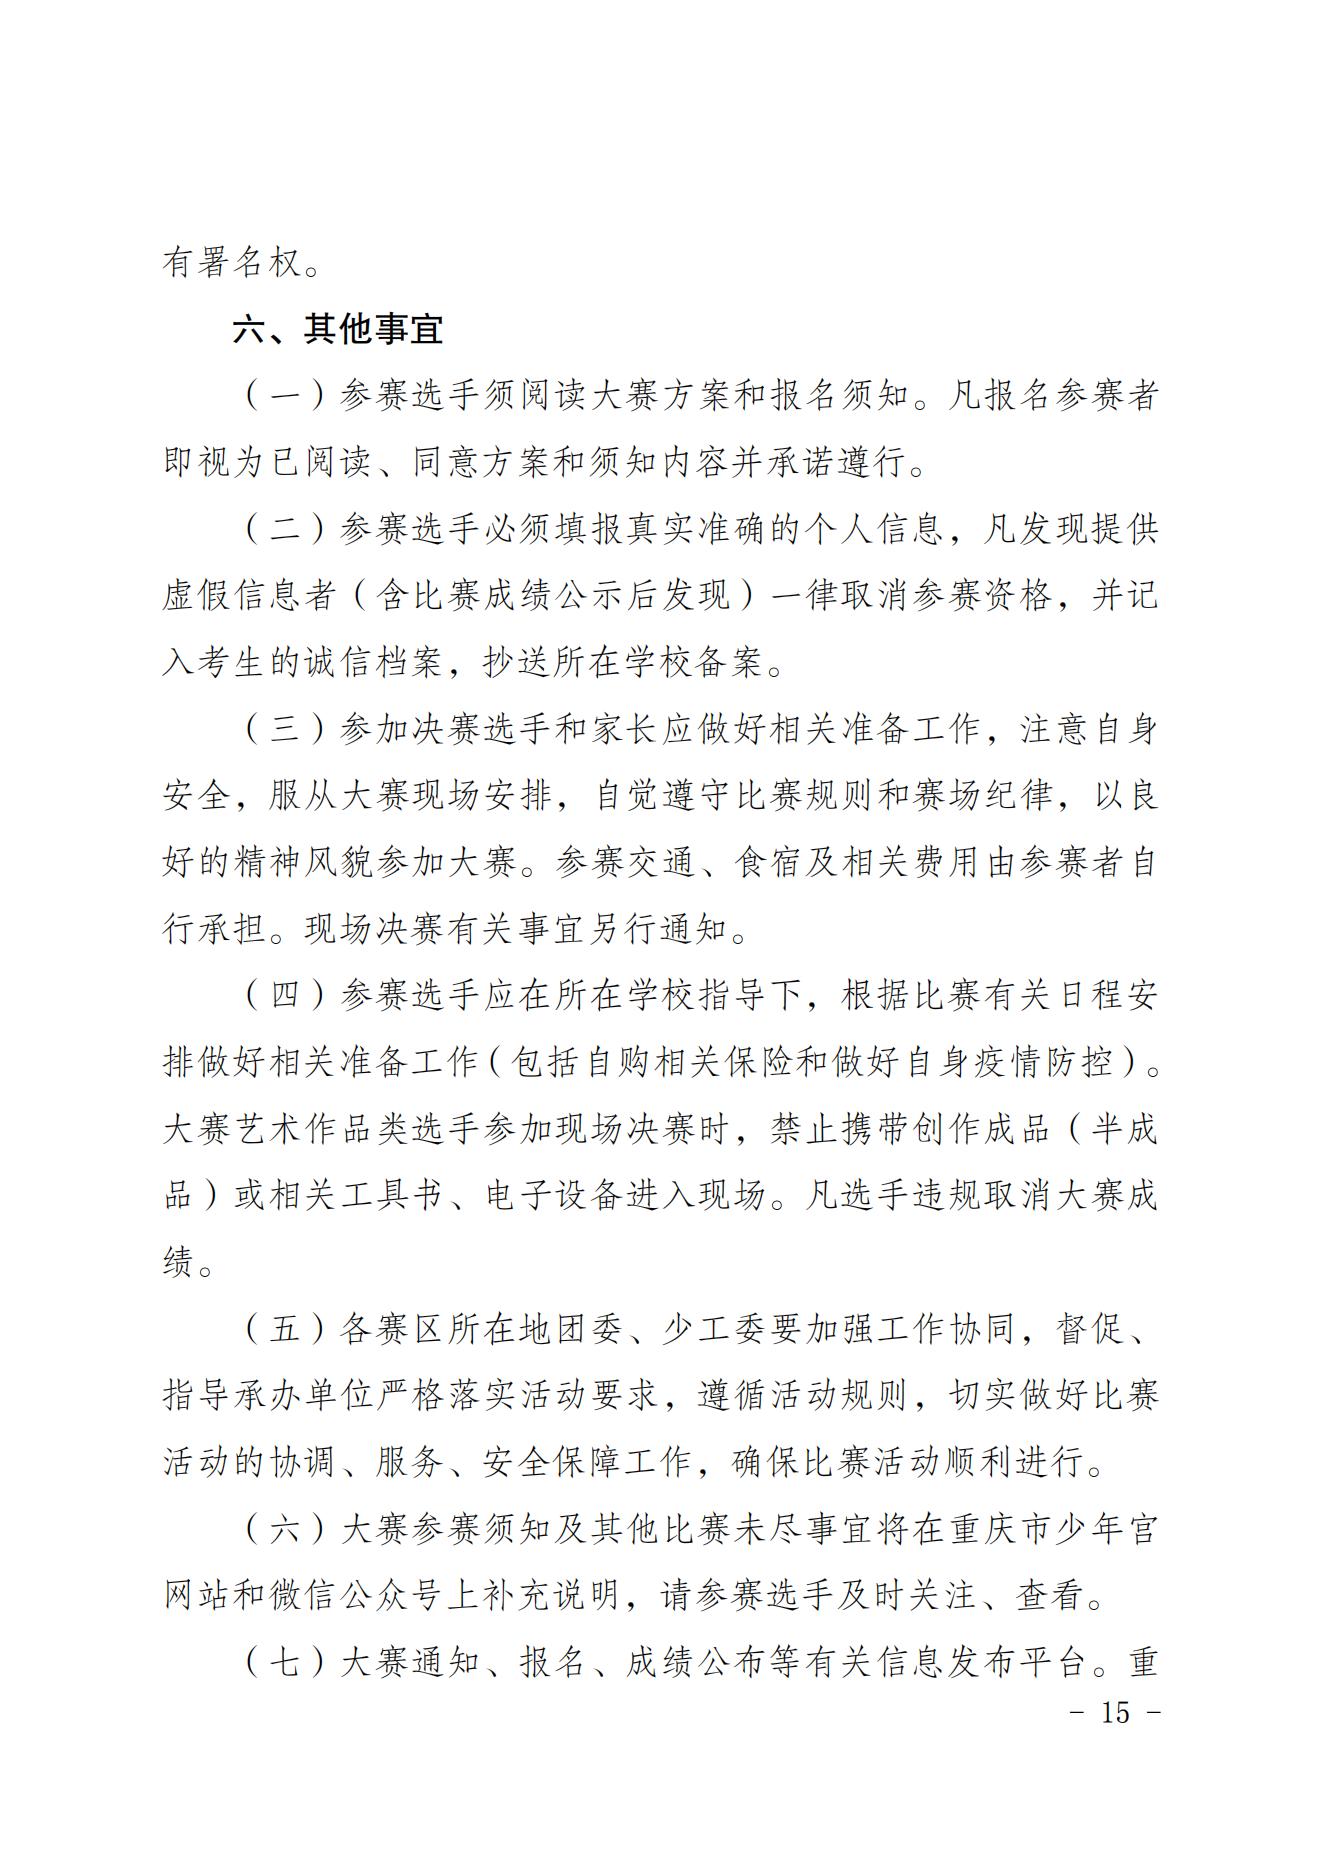 2022共青团重庆市委关于印发重庆市第十七届中小学生才艺大赛活动方案的通知 第15张